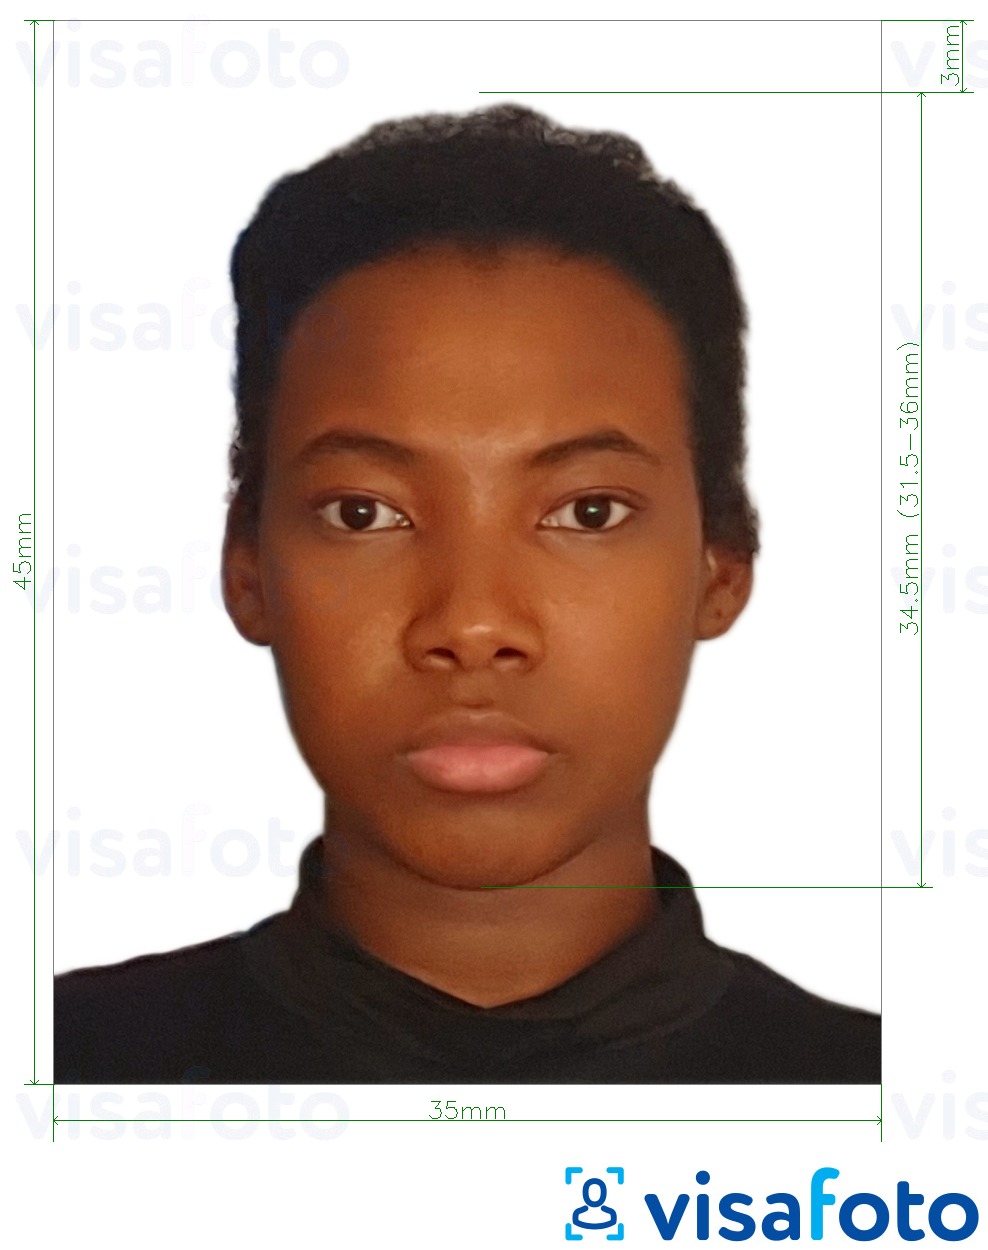 Halimbawa ng larawan para sa Benin pasaporte 3.5x4.5 cm (35x45 mm) na may eksaktong sukat na detalye